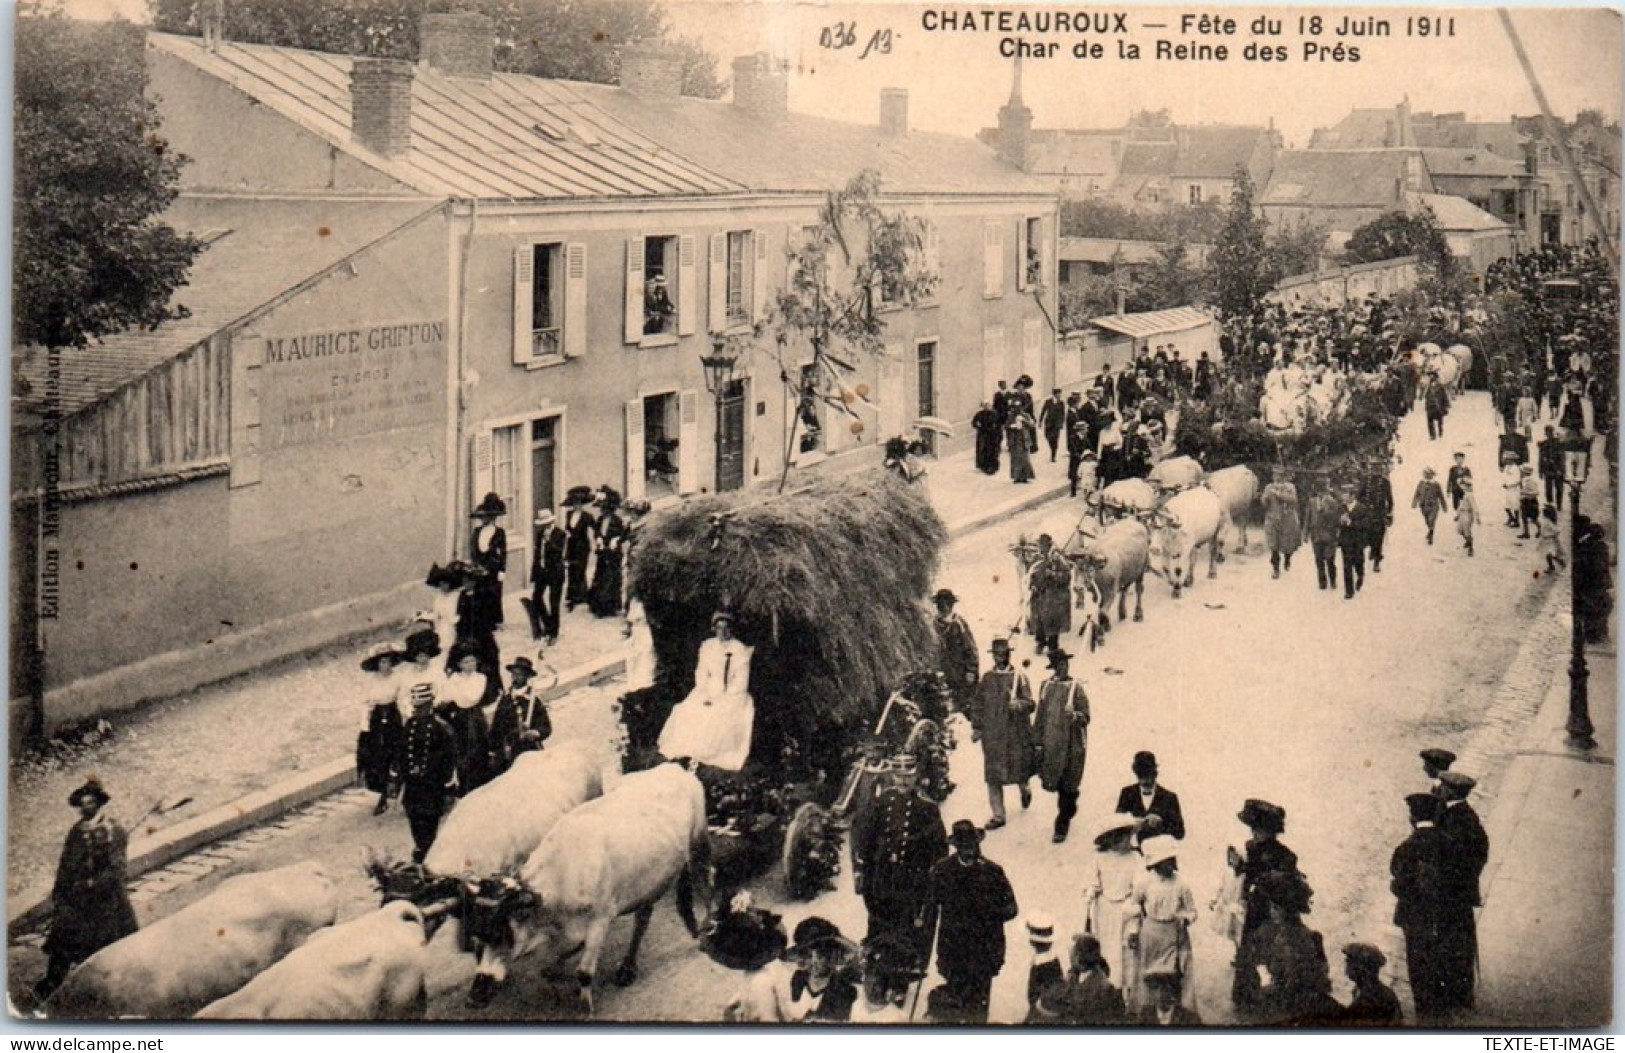 36 CHATEAROUX - Fete De 1911, Char De La Reine  - Chateauroux